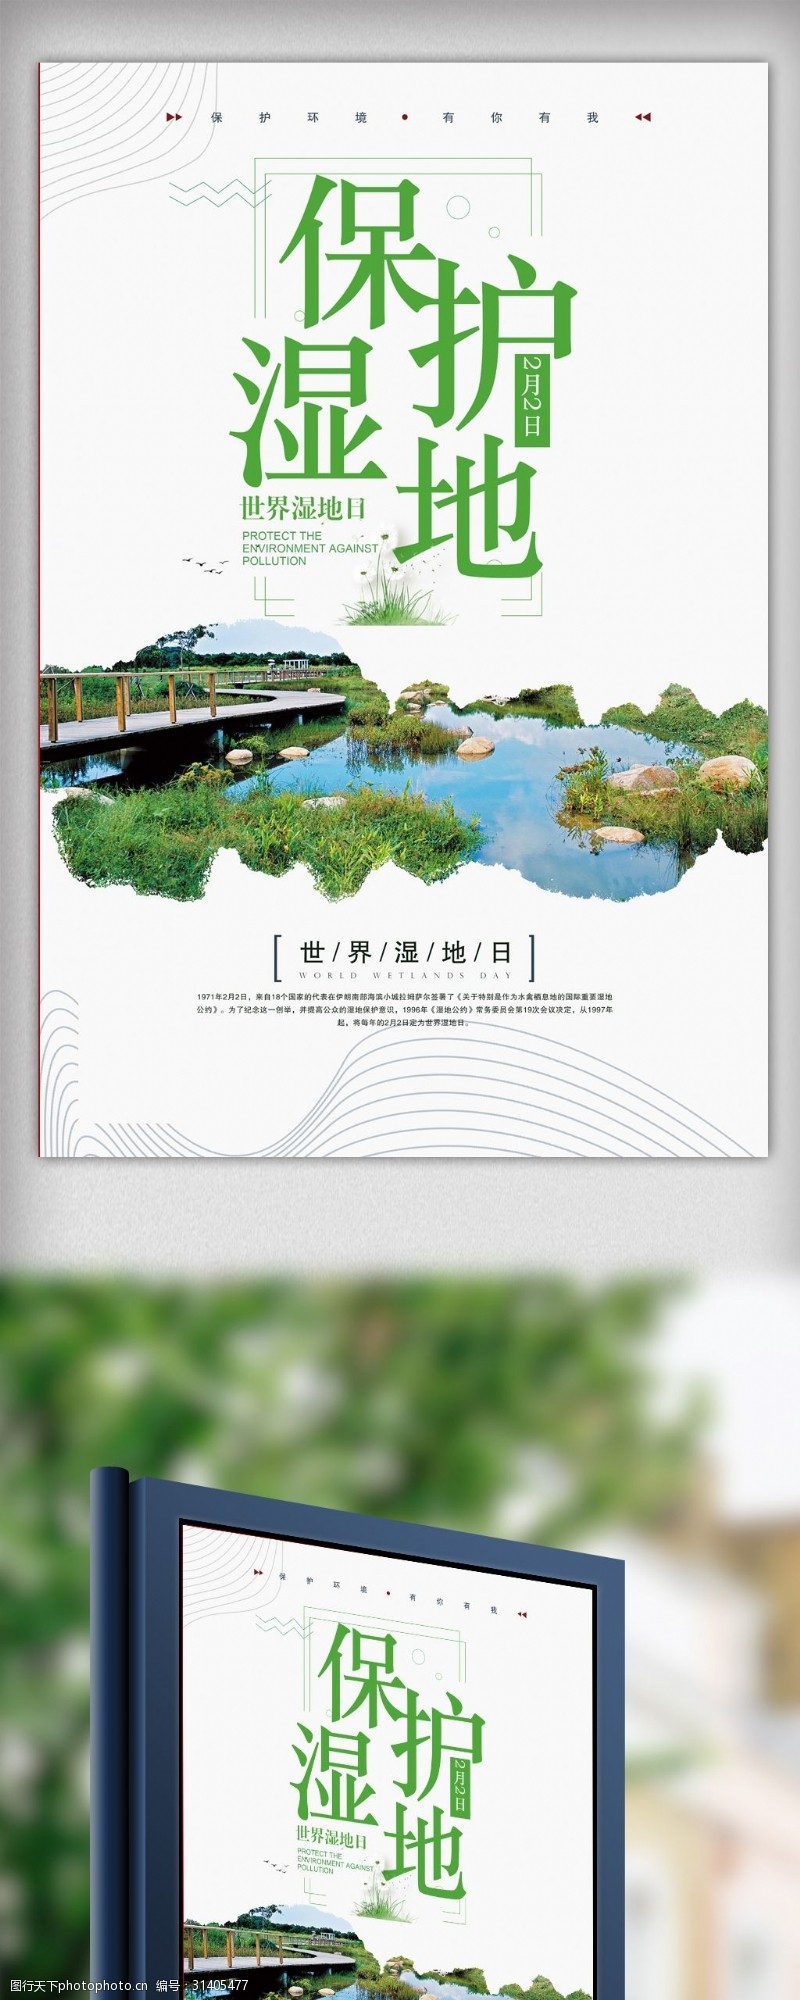 湿地保护区世界湿地日宣传海报